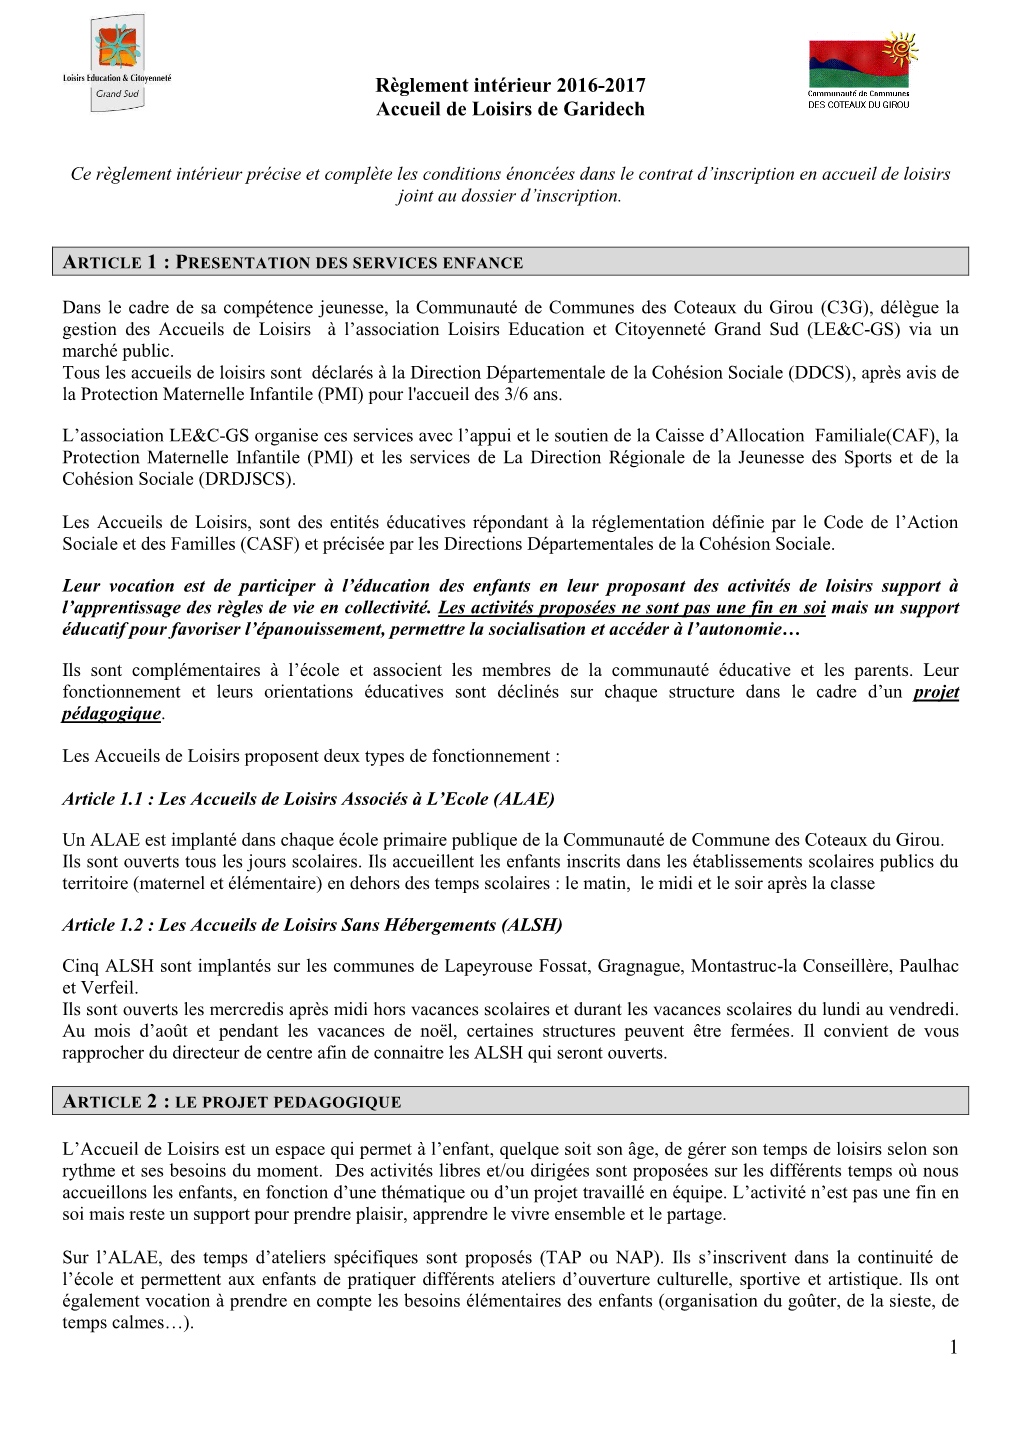 Règlement Intérieur 2016-2017 Accueil De Loisirs De Garidech 1